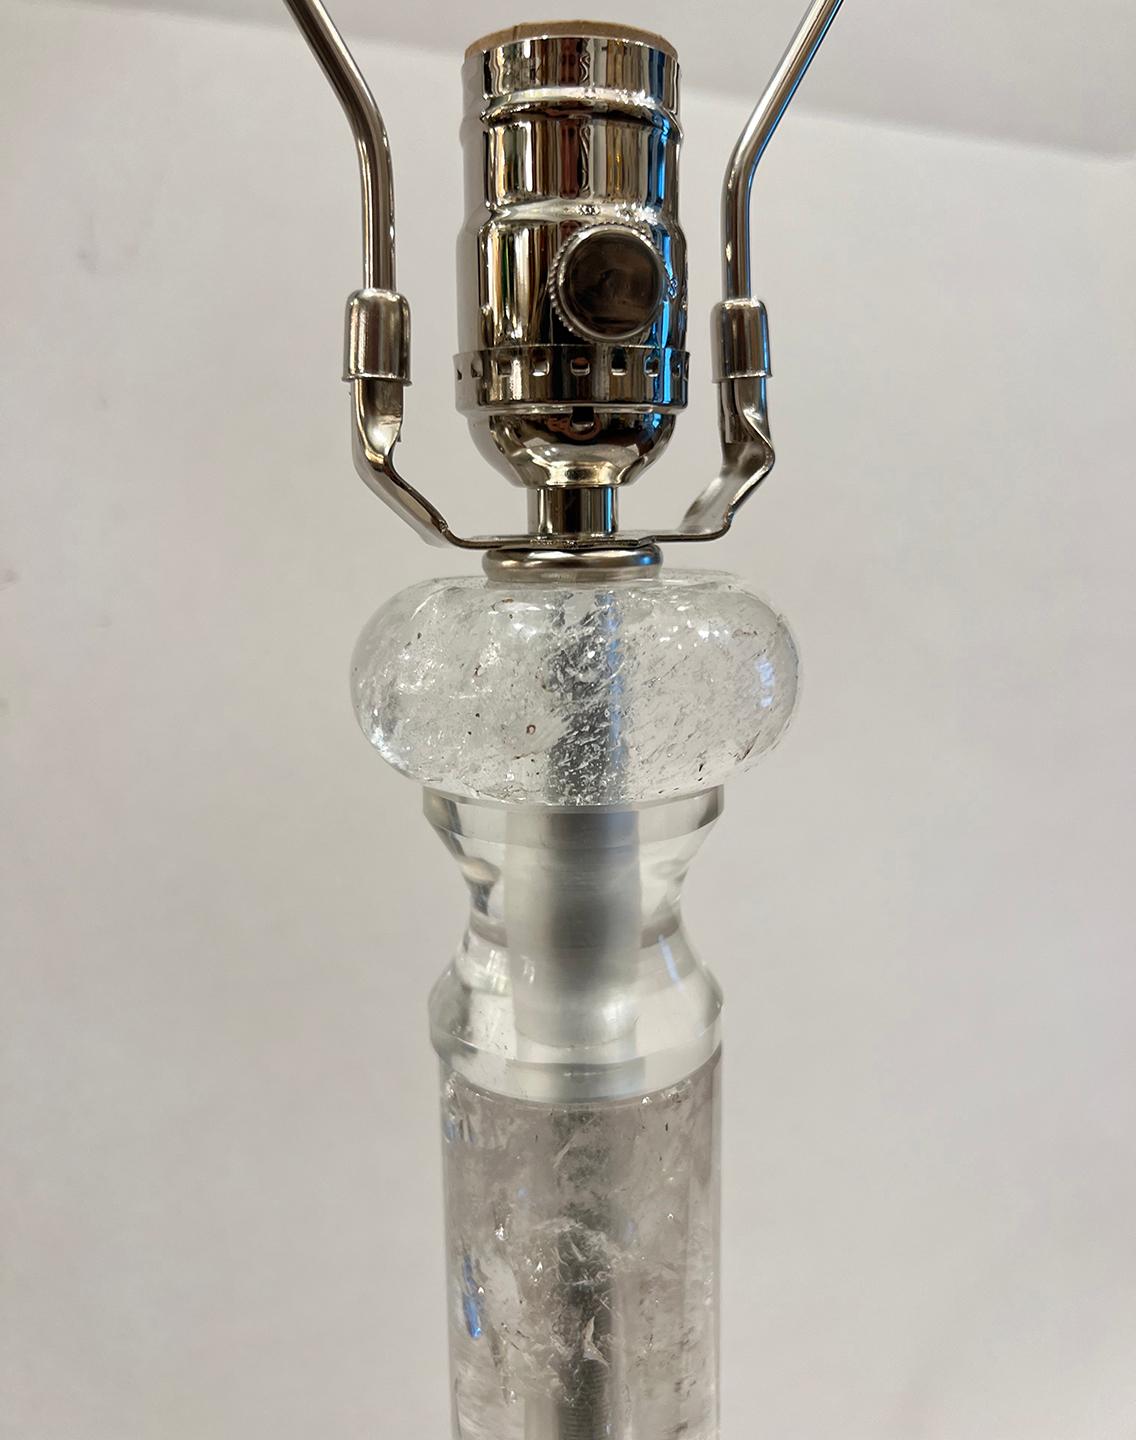 Lampe en cristal de roche français des années 1960 avec base argentée.

Mesures :
Hauteur du corps : 15.5